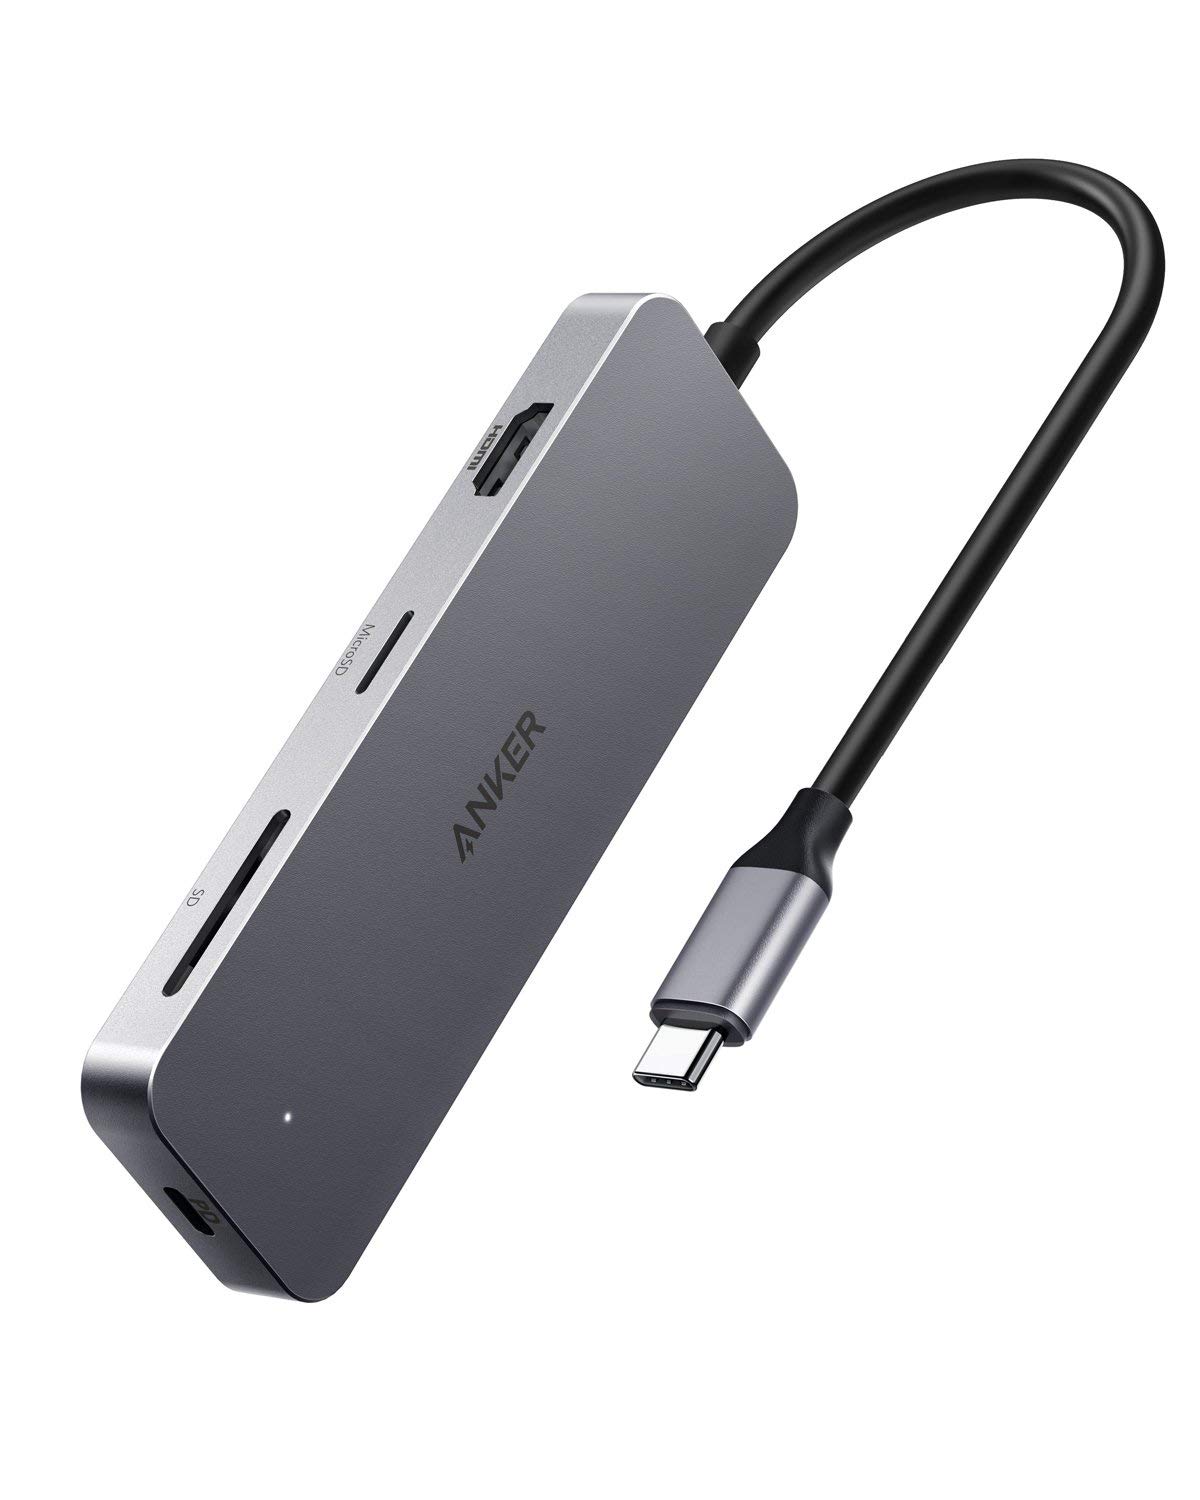 Anker、HDMIやUSB PD対応USB-Cポートなど7種のポートを搭載した｢7 in-1 プレミアム USB-Cハブ｣を発売